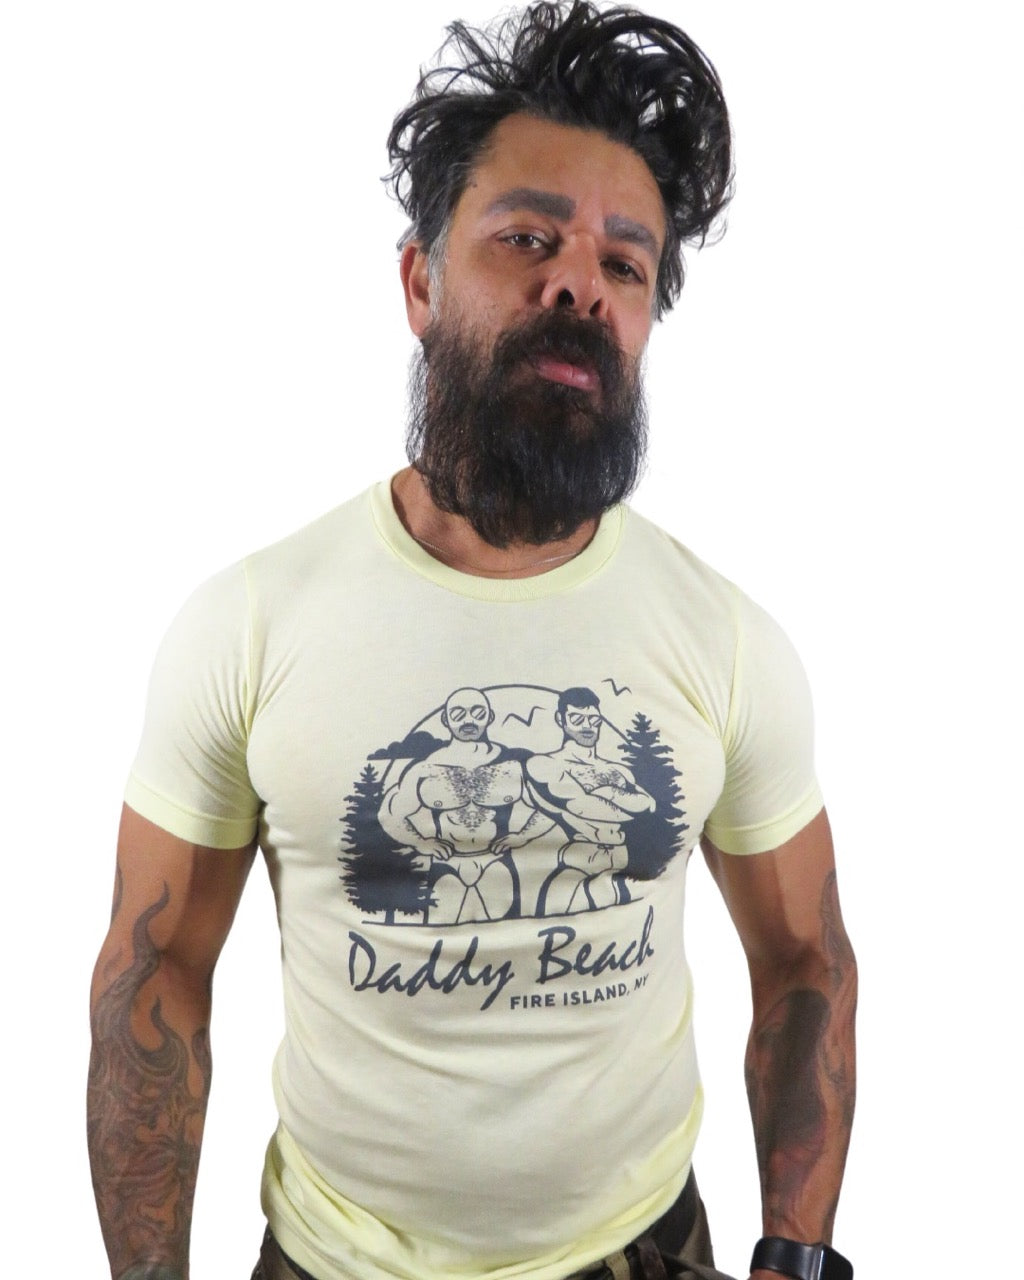 Daddy Beach T-Shirt in Banana Cream